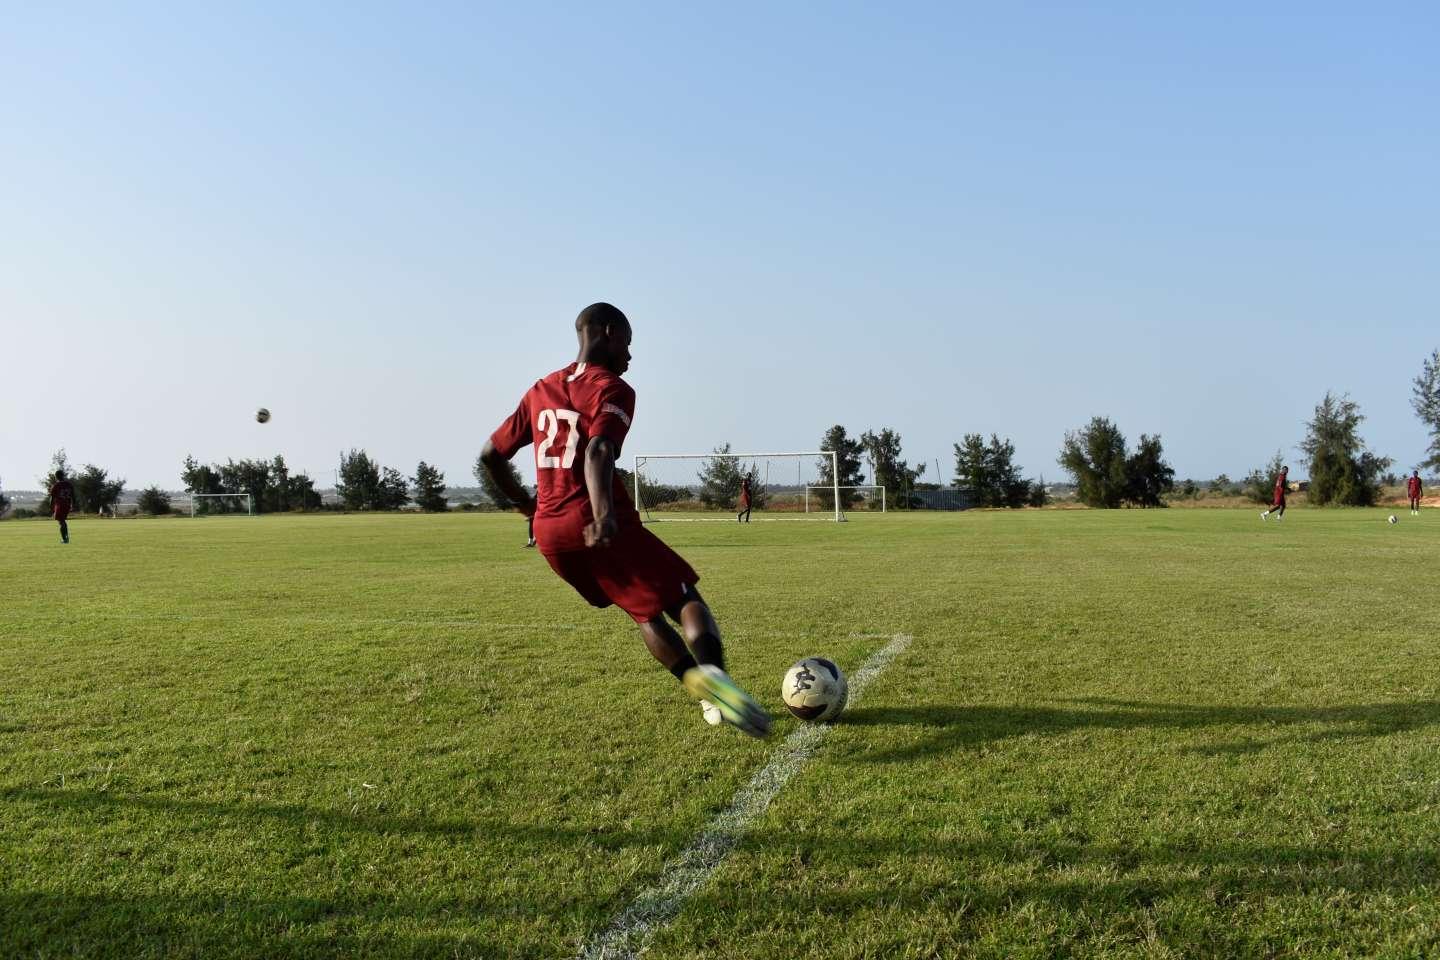 Au Sénégal, une académie pour former les futures stars du football